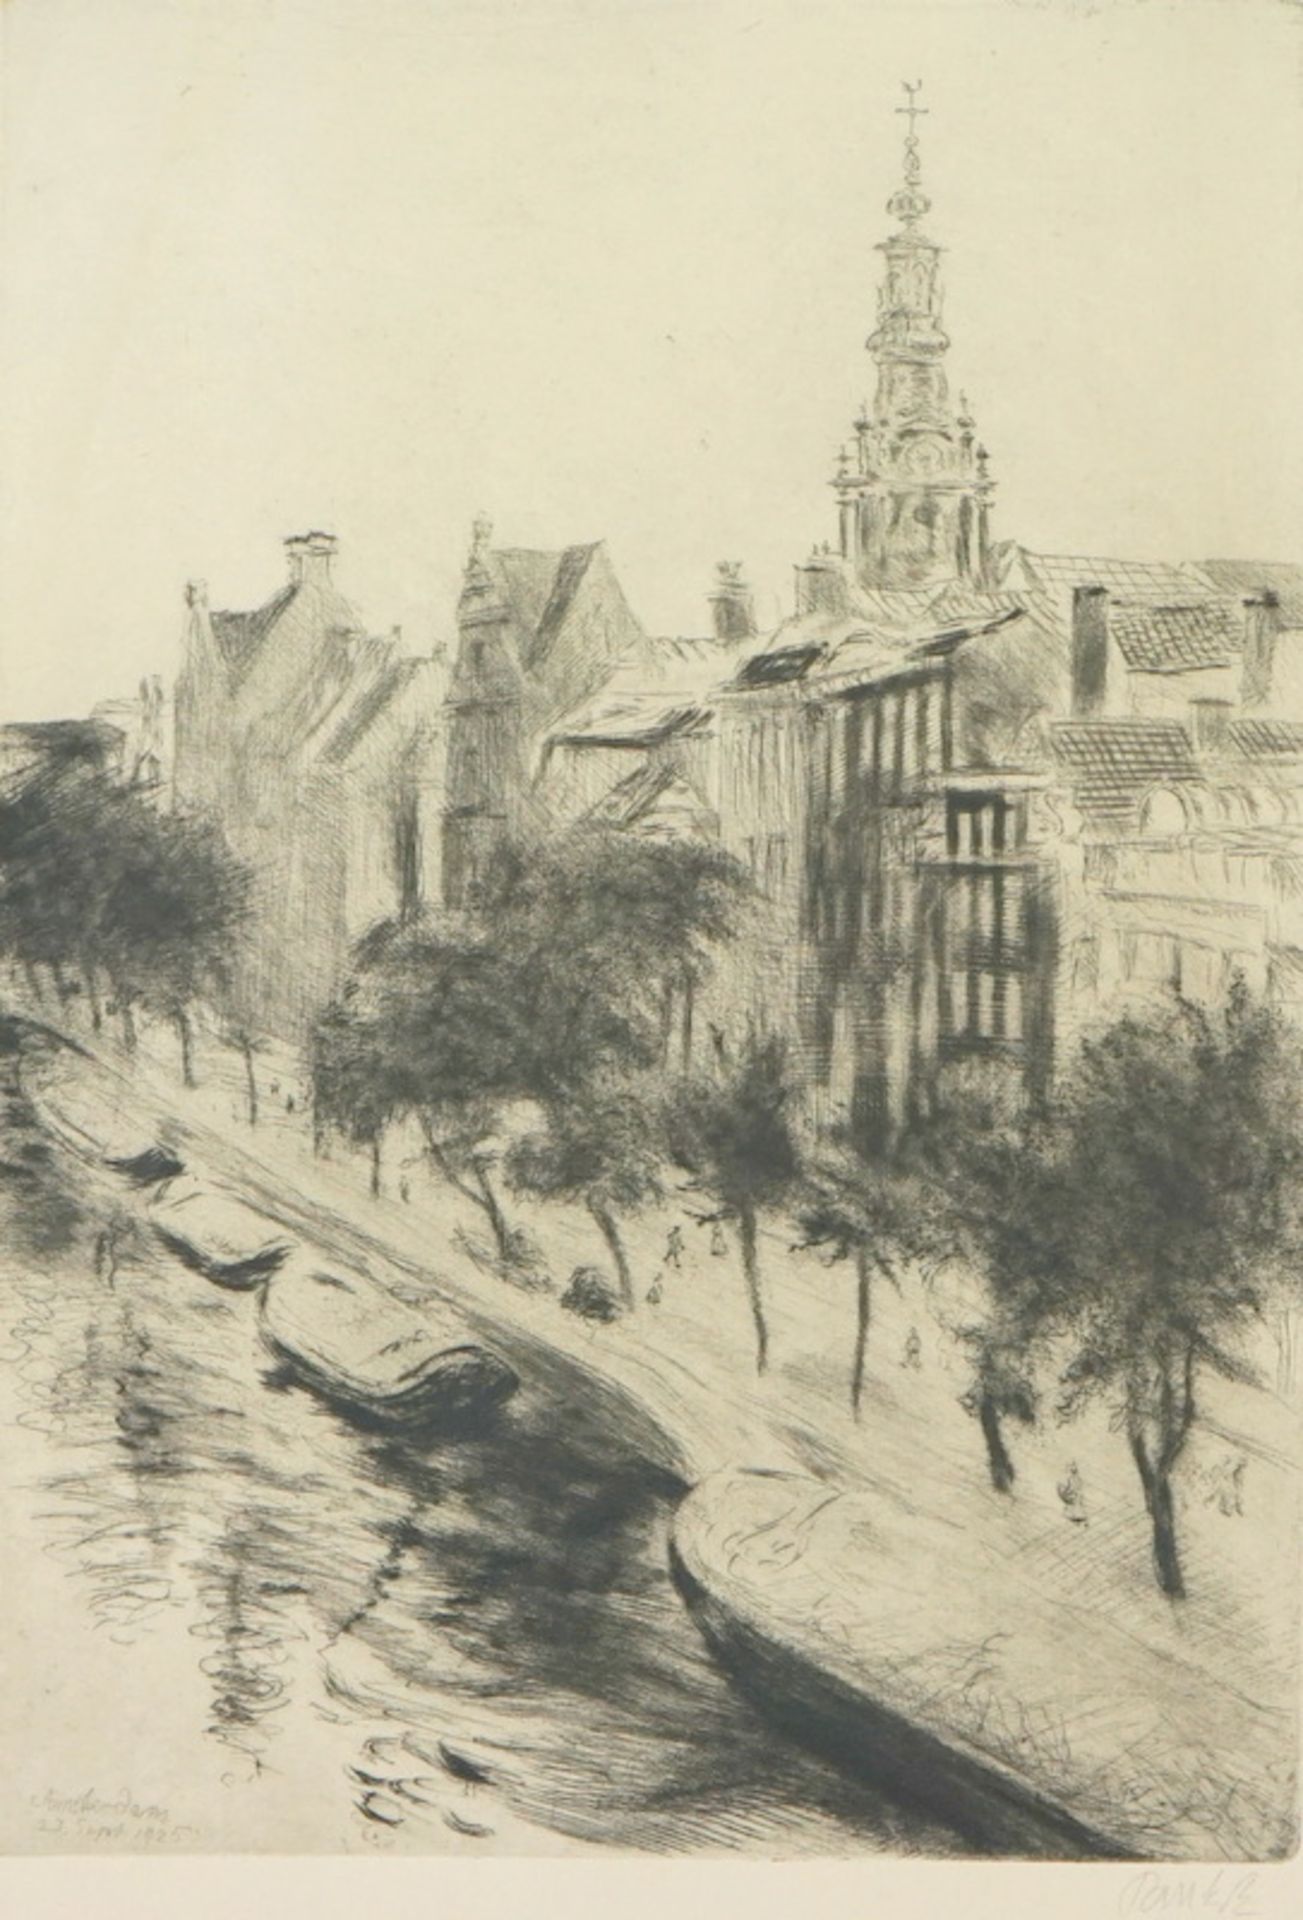 Pankok, Bernhard: "Amsterdam" Blick auf Grachten mit Booten, Baumreihen, Häusern und die Oude Kerk